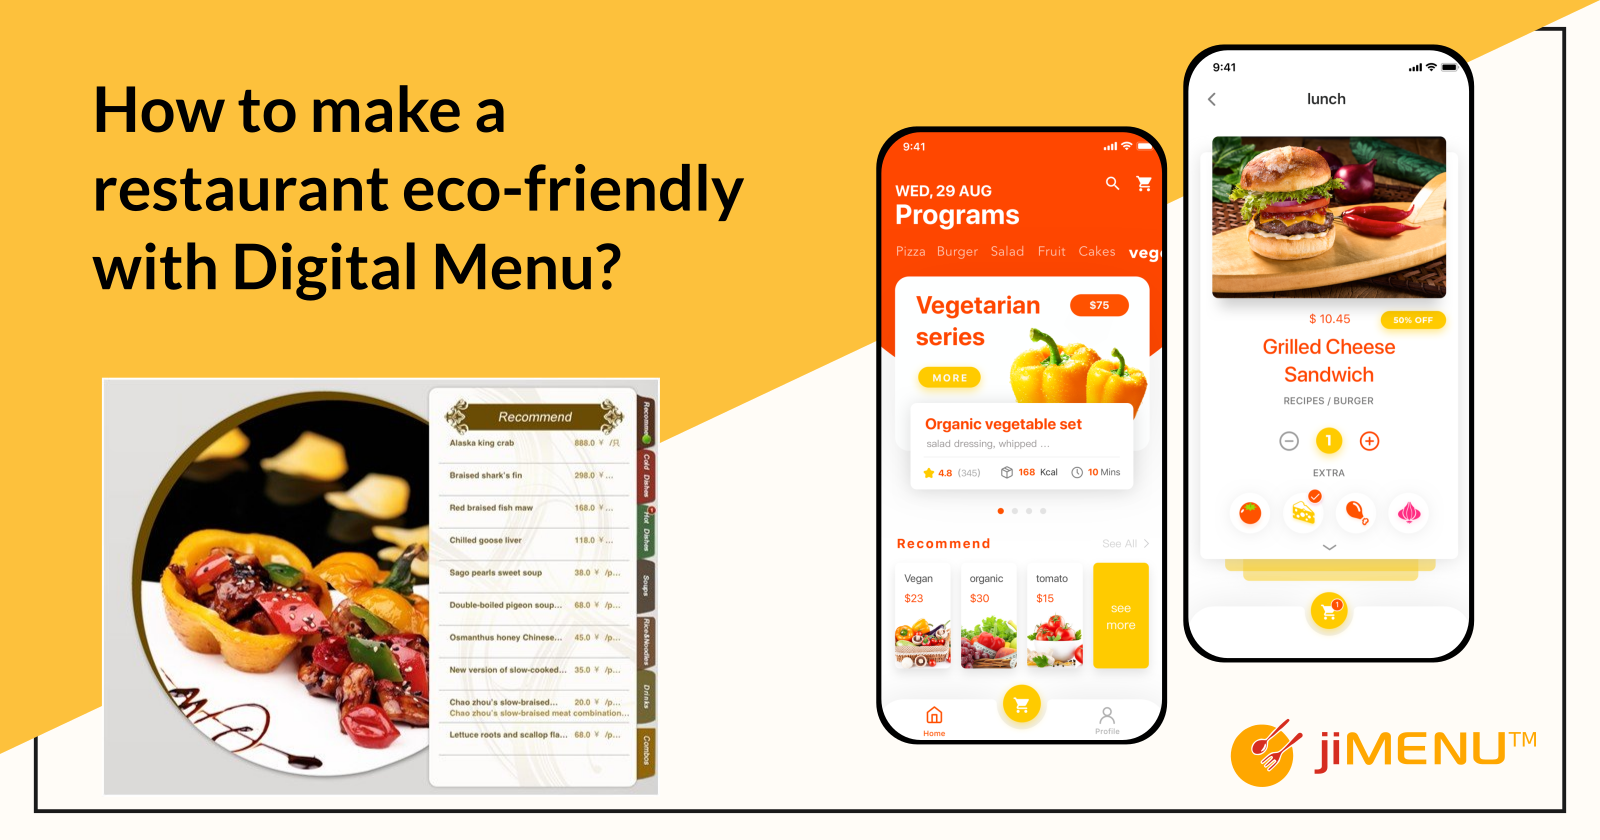 How To Make A Restaurant Eco-friendly With Digital Menu?